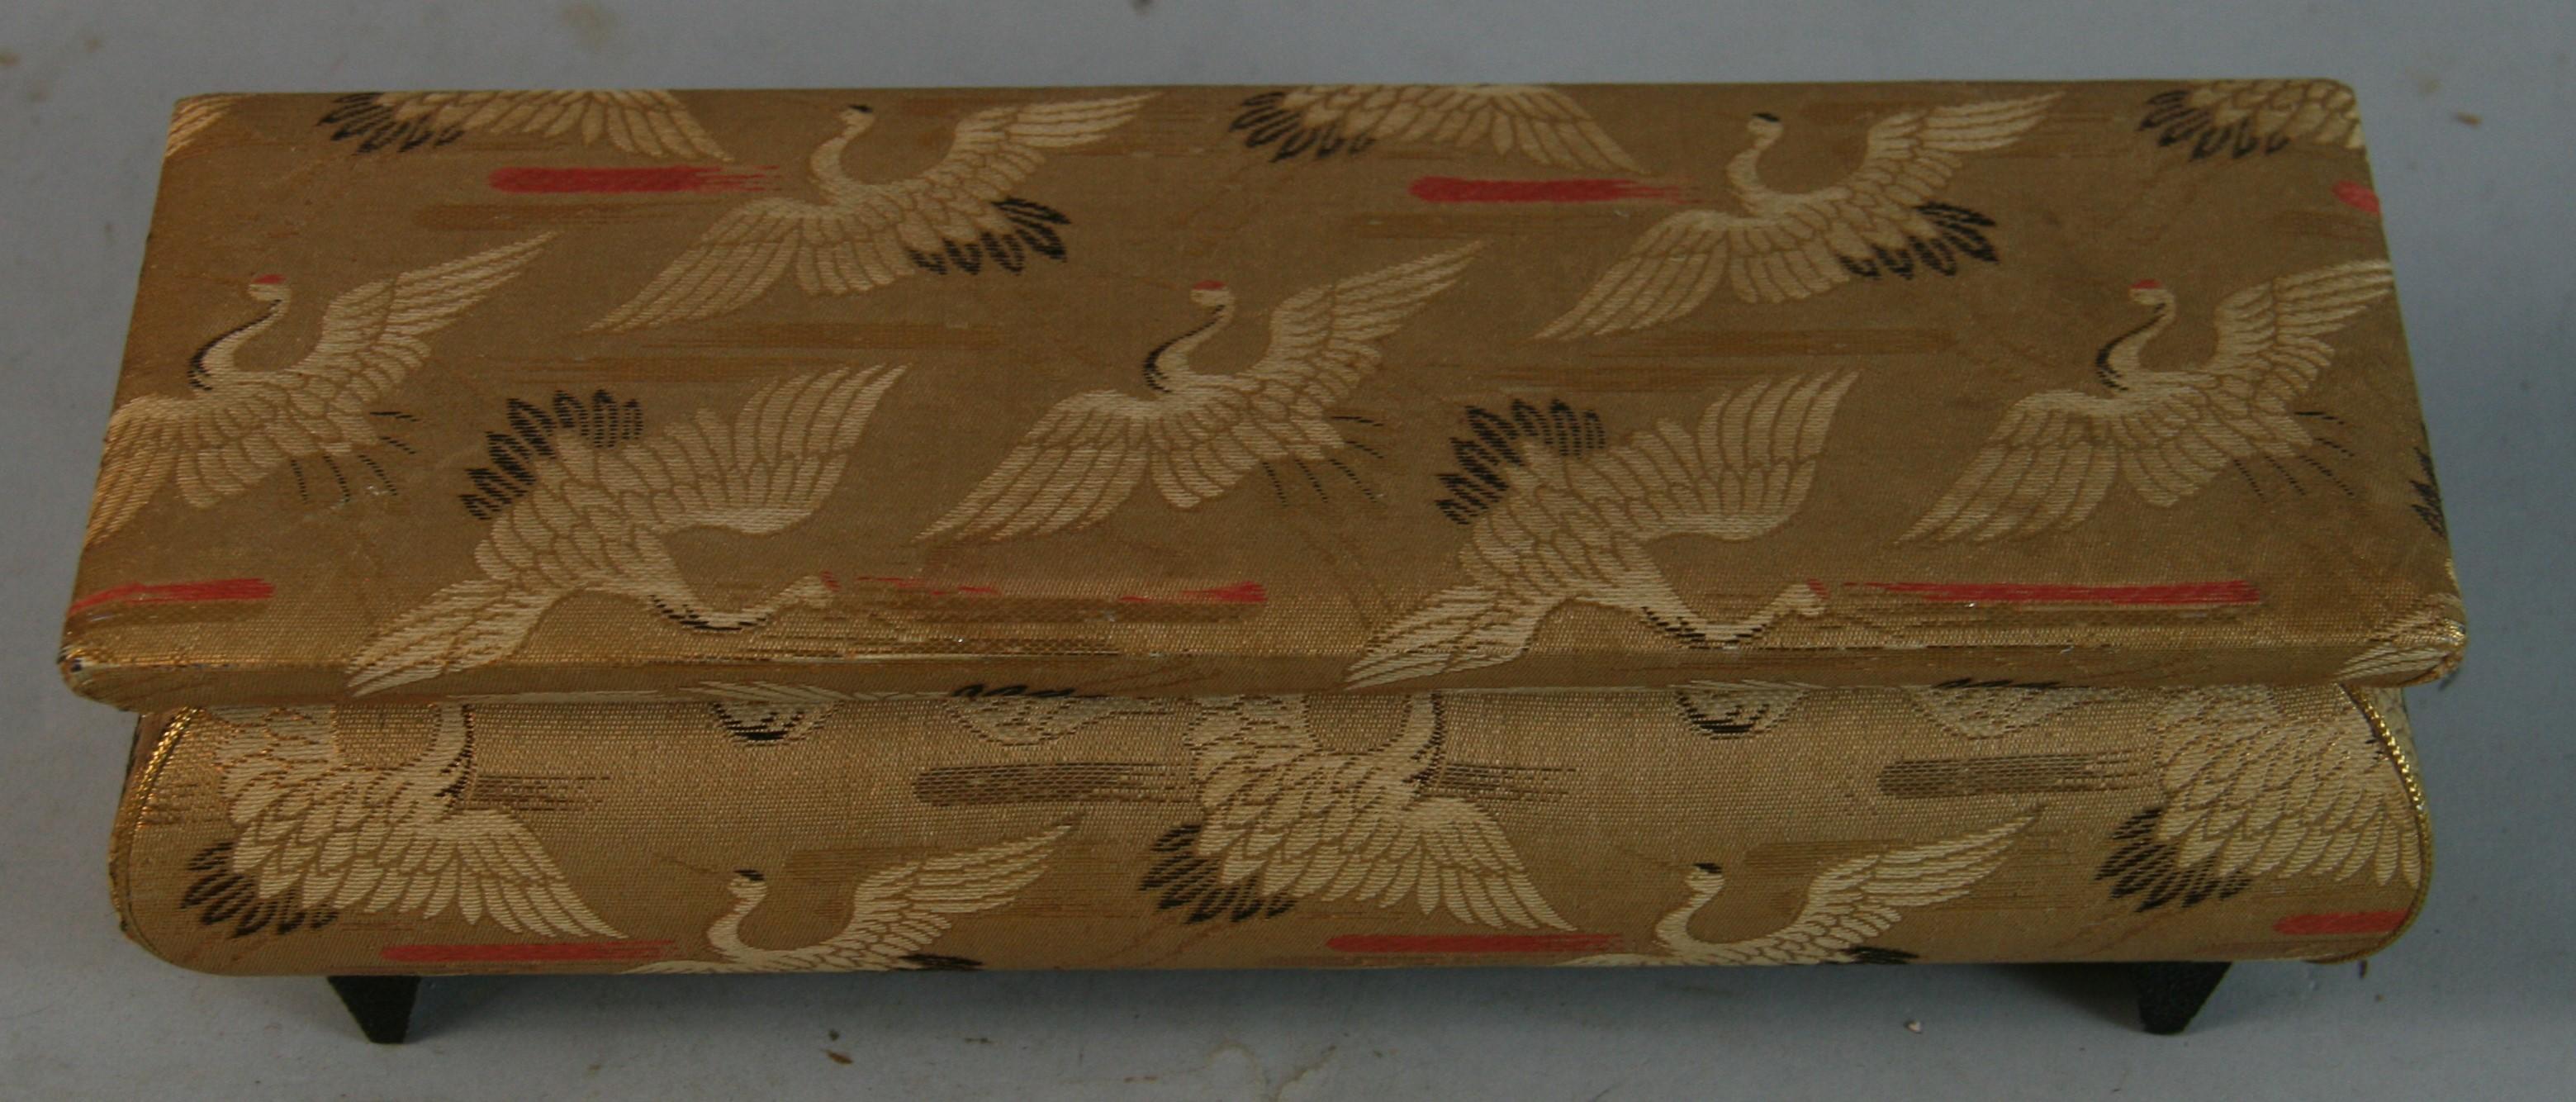 1574 Vintage Japanisch Stoff bedeckt Holz Schmuck /Musik-Box
Marke Made in Japan
Mechanismus der Musik  in betriebsbereitem Zustand